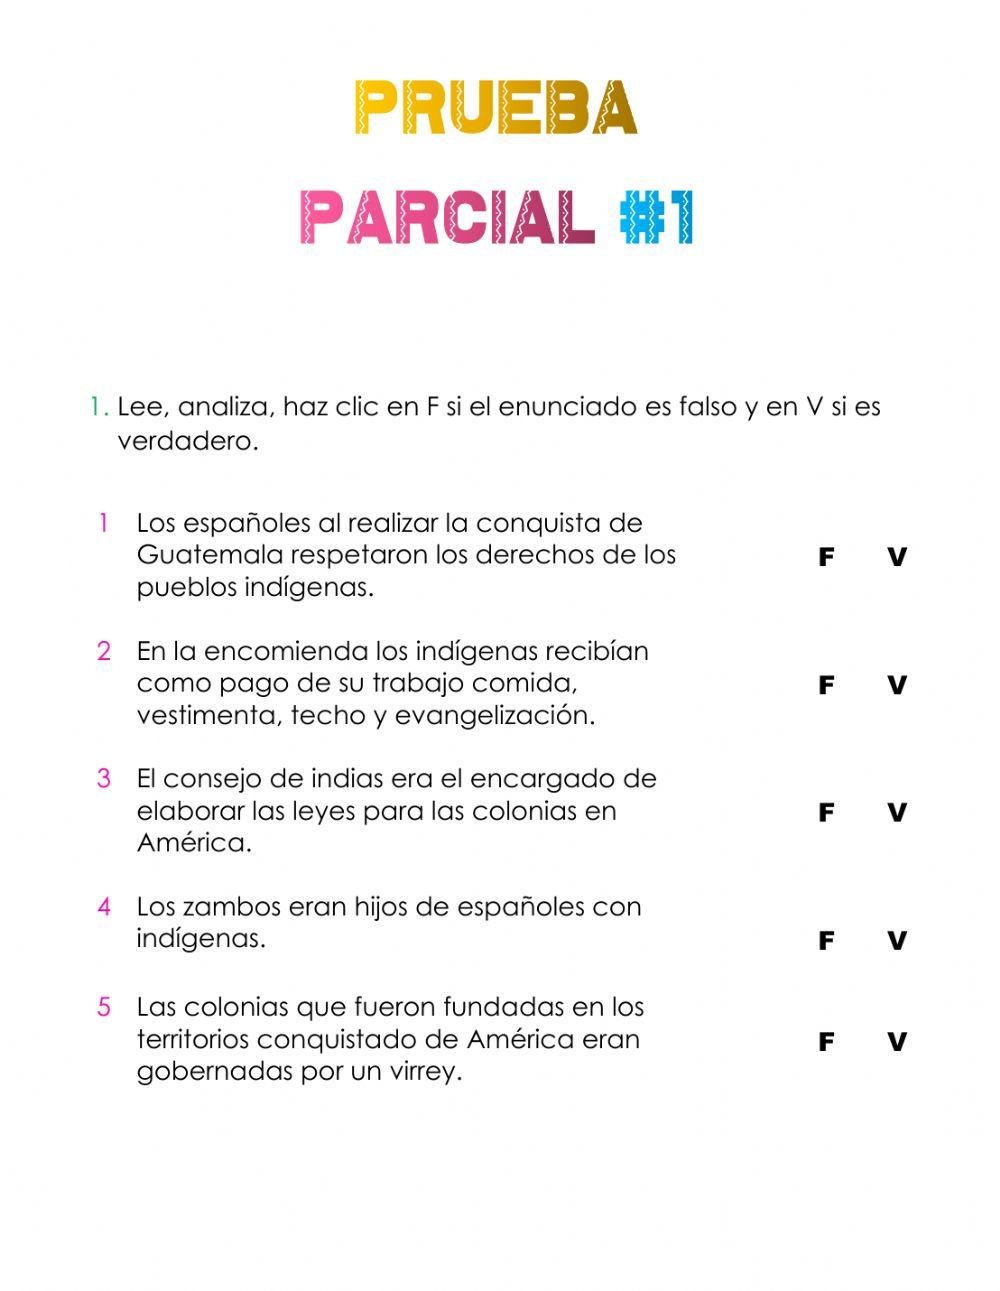 PRUEBA PARCIAL -1 MEDIO SOCIAL, 3 BLOQUE